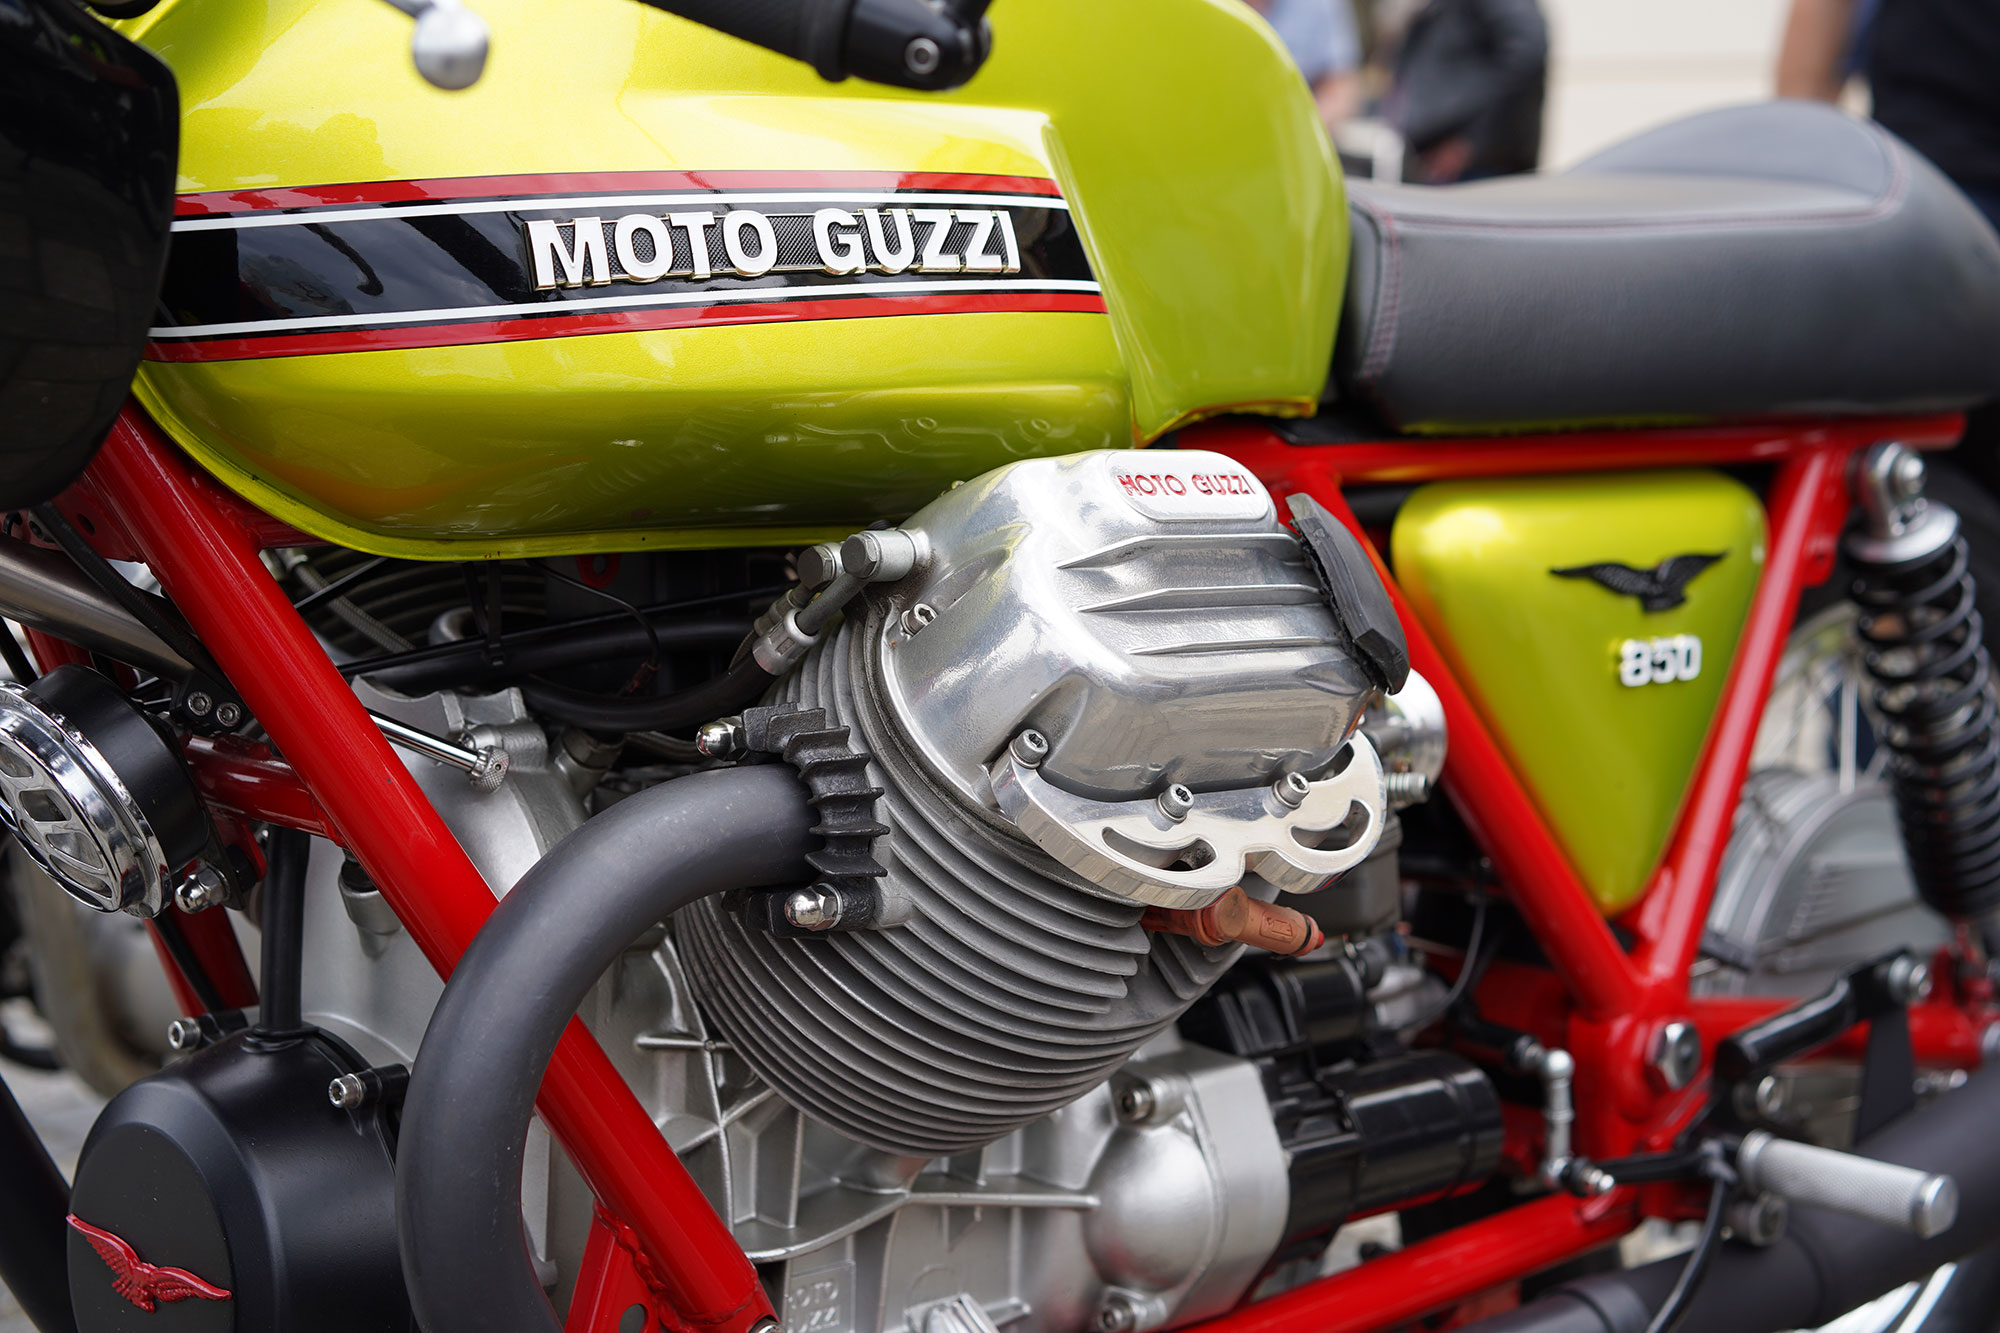 Moto Guzzi detail.